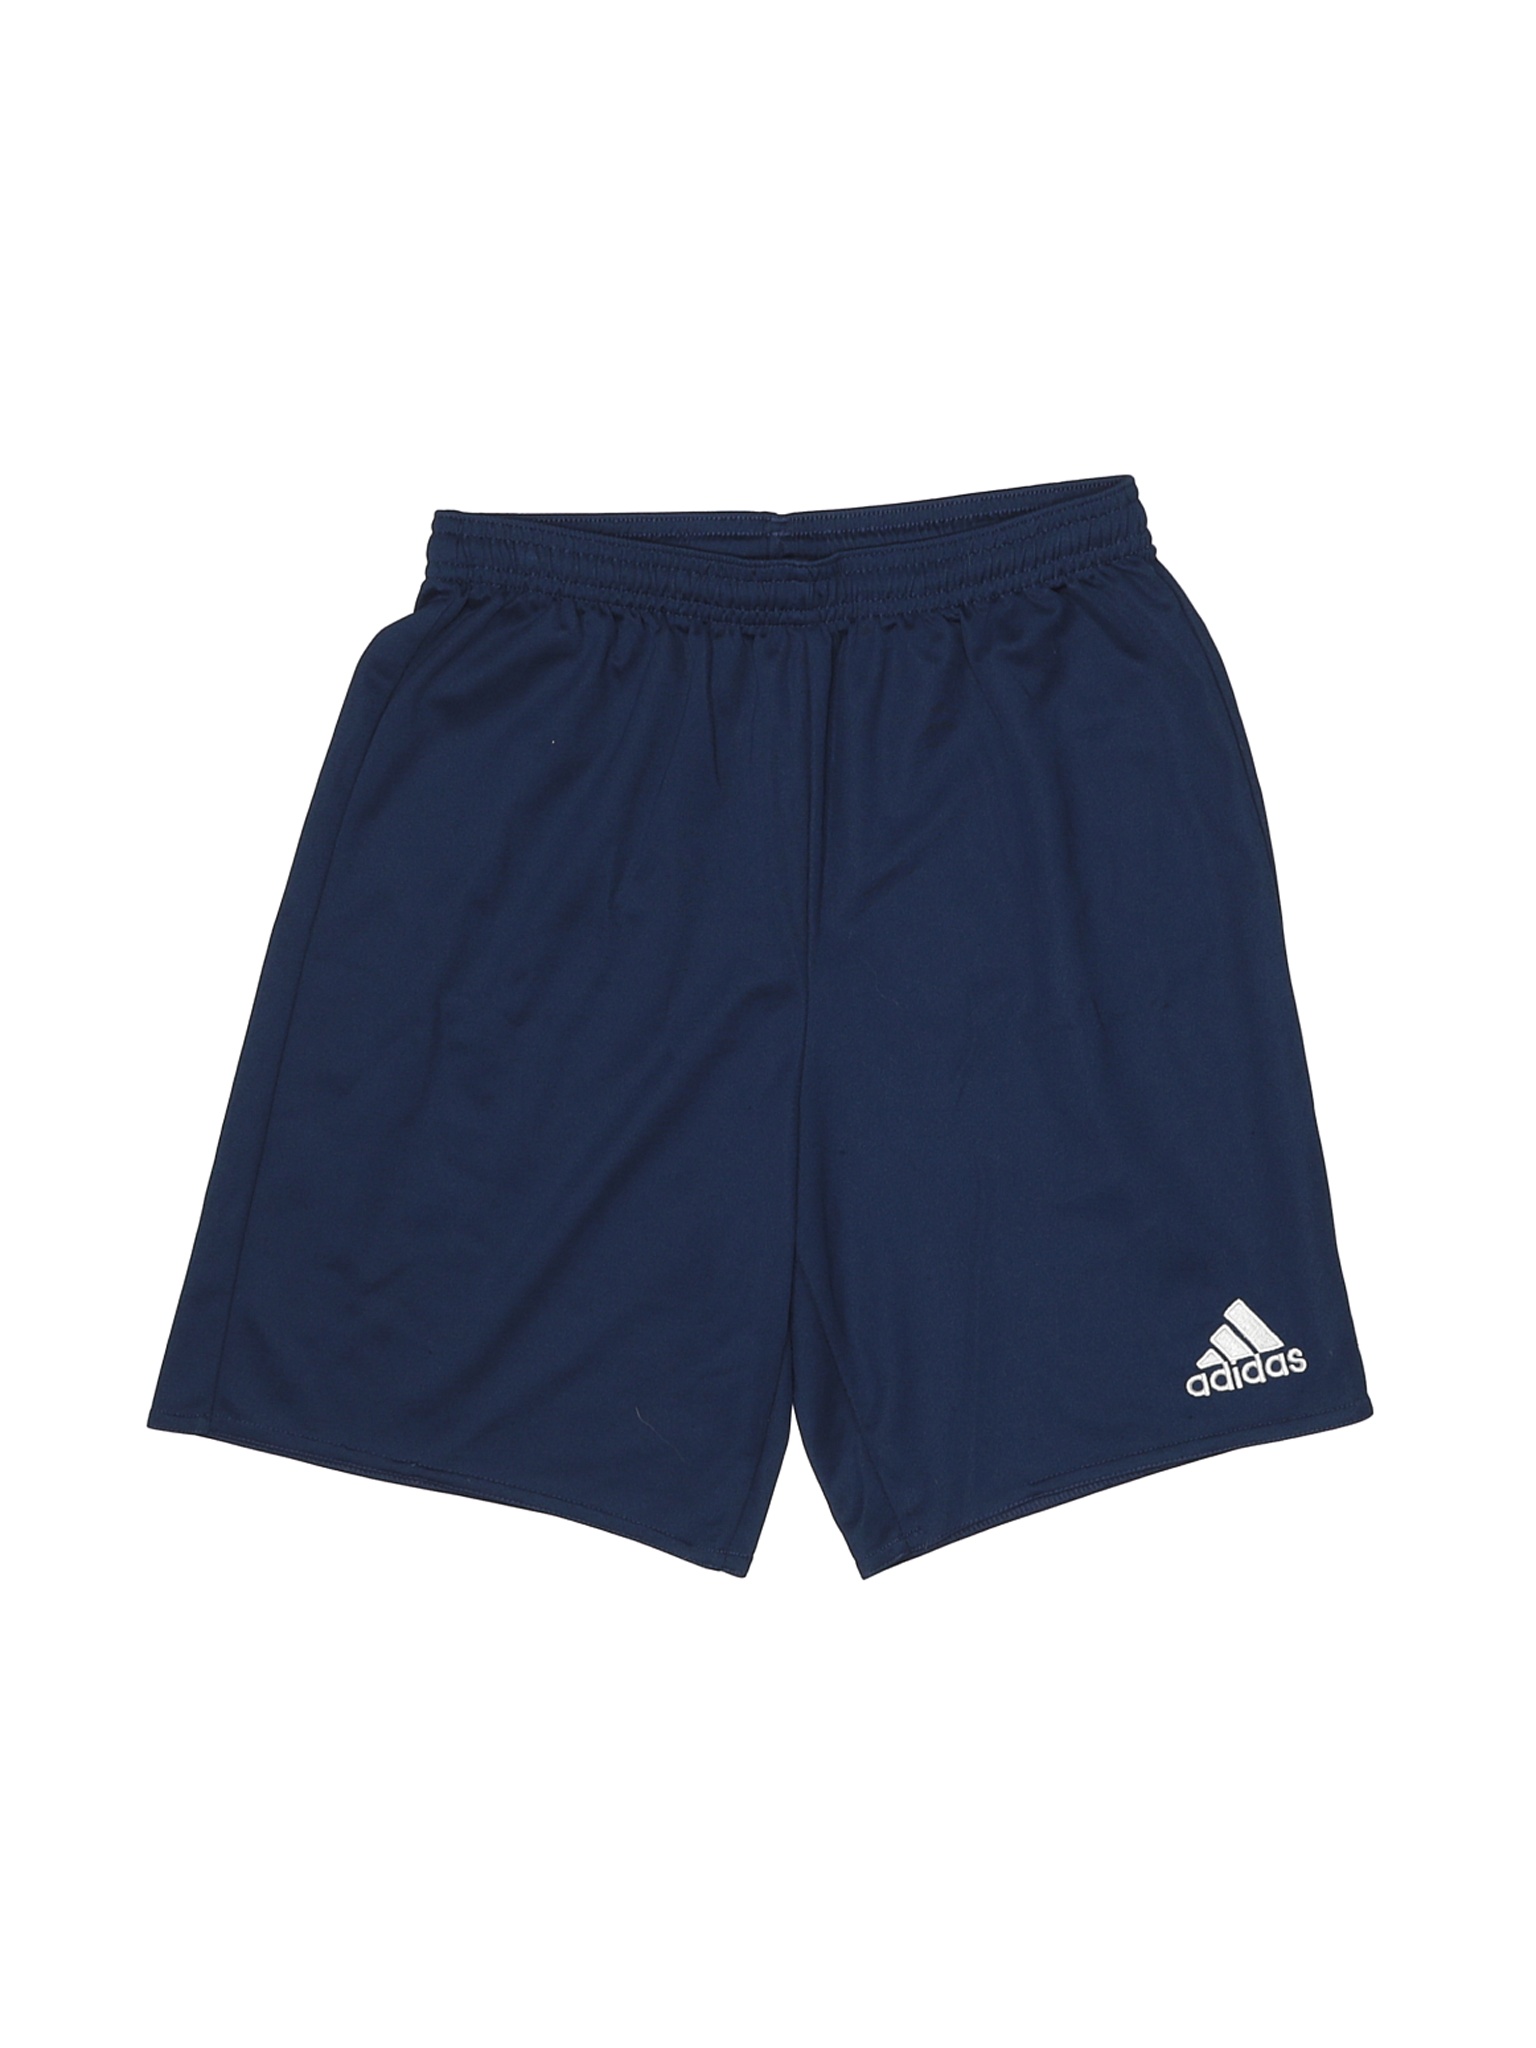 Adidas Boys Blue Athletic Shorts L Youth | eBay